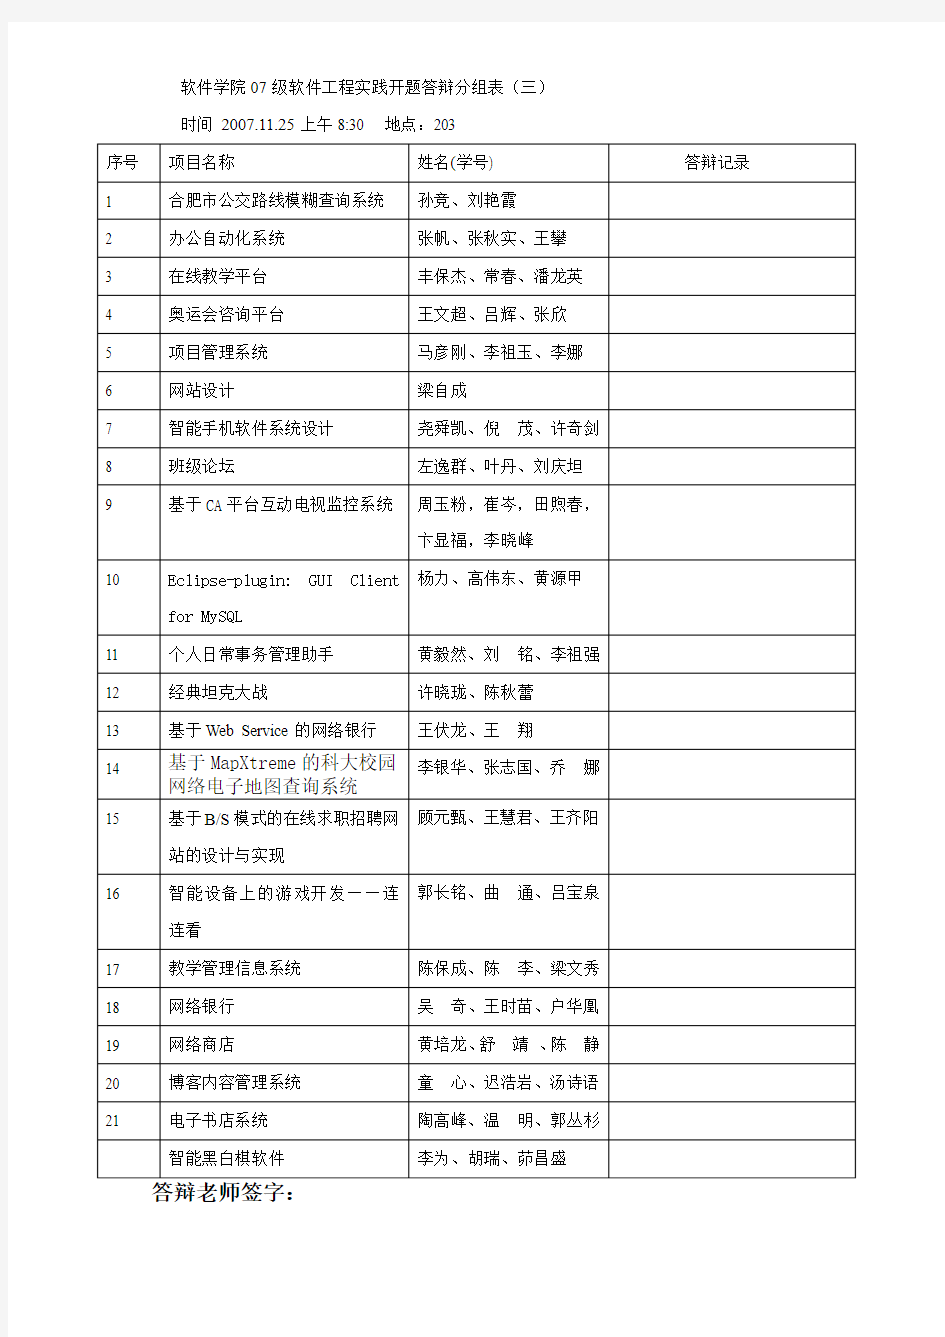 中国科技大学 1124193503_软件学院07级实践报名表2